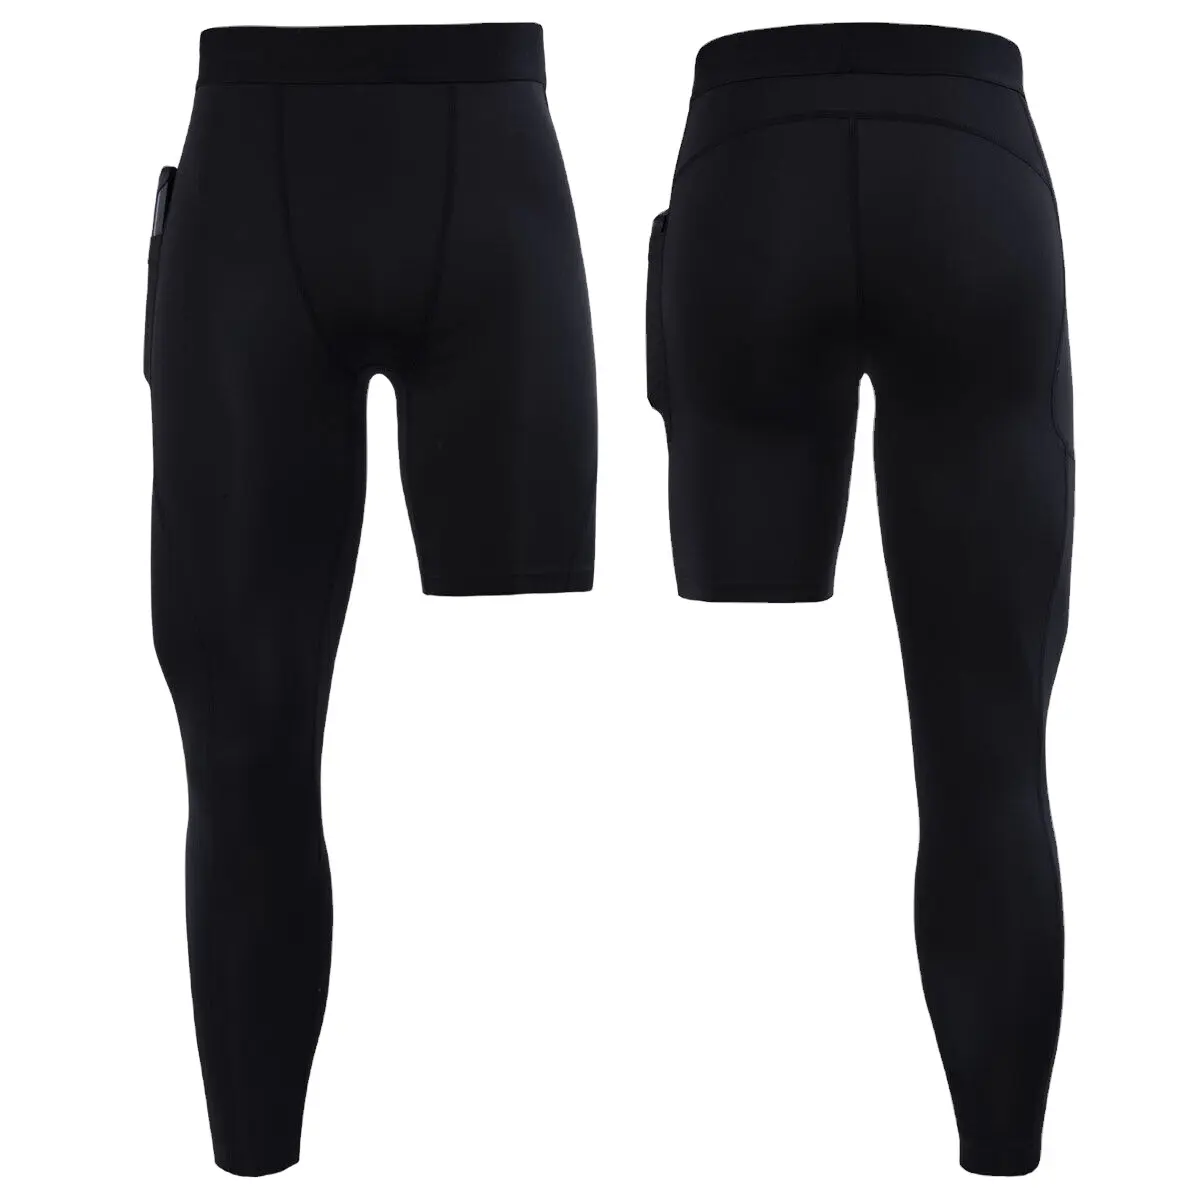 Pantalones ajustados de compresión personalizables al por mayor para hombre, pantalones de chándal elásticos para correr, ciclismo, baloncesto, fútbol, mallas deportivas